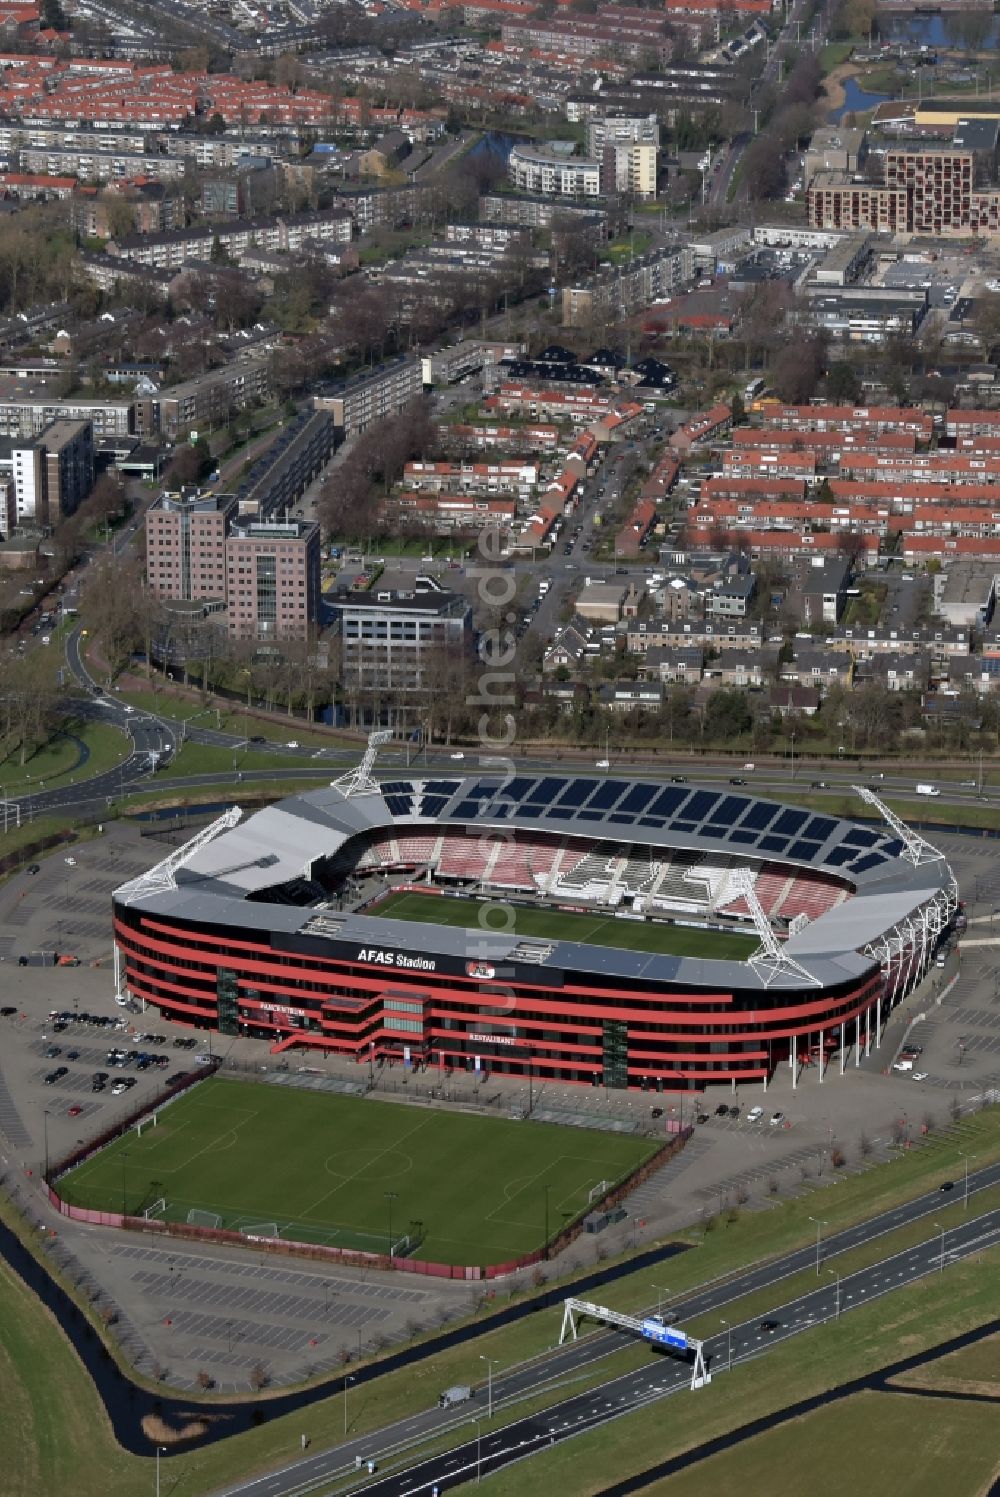 Alkmaar aus der Vogelperspektive: Sportstätten-Gelände der Arena des Stadion AFAS AZ Stadion am Stadionweg in Alkmaar in Noord-Holland, Niederlande